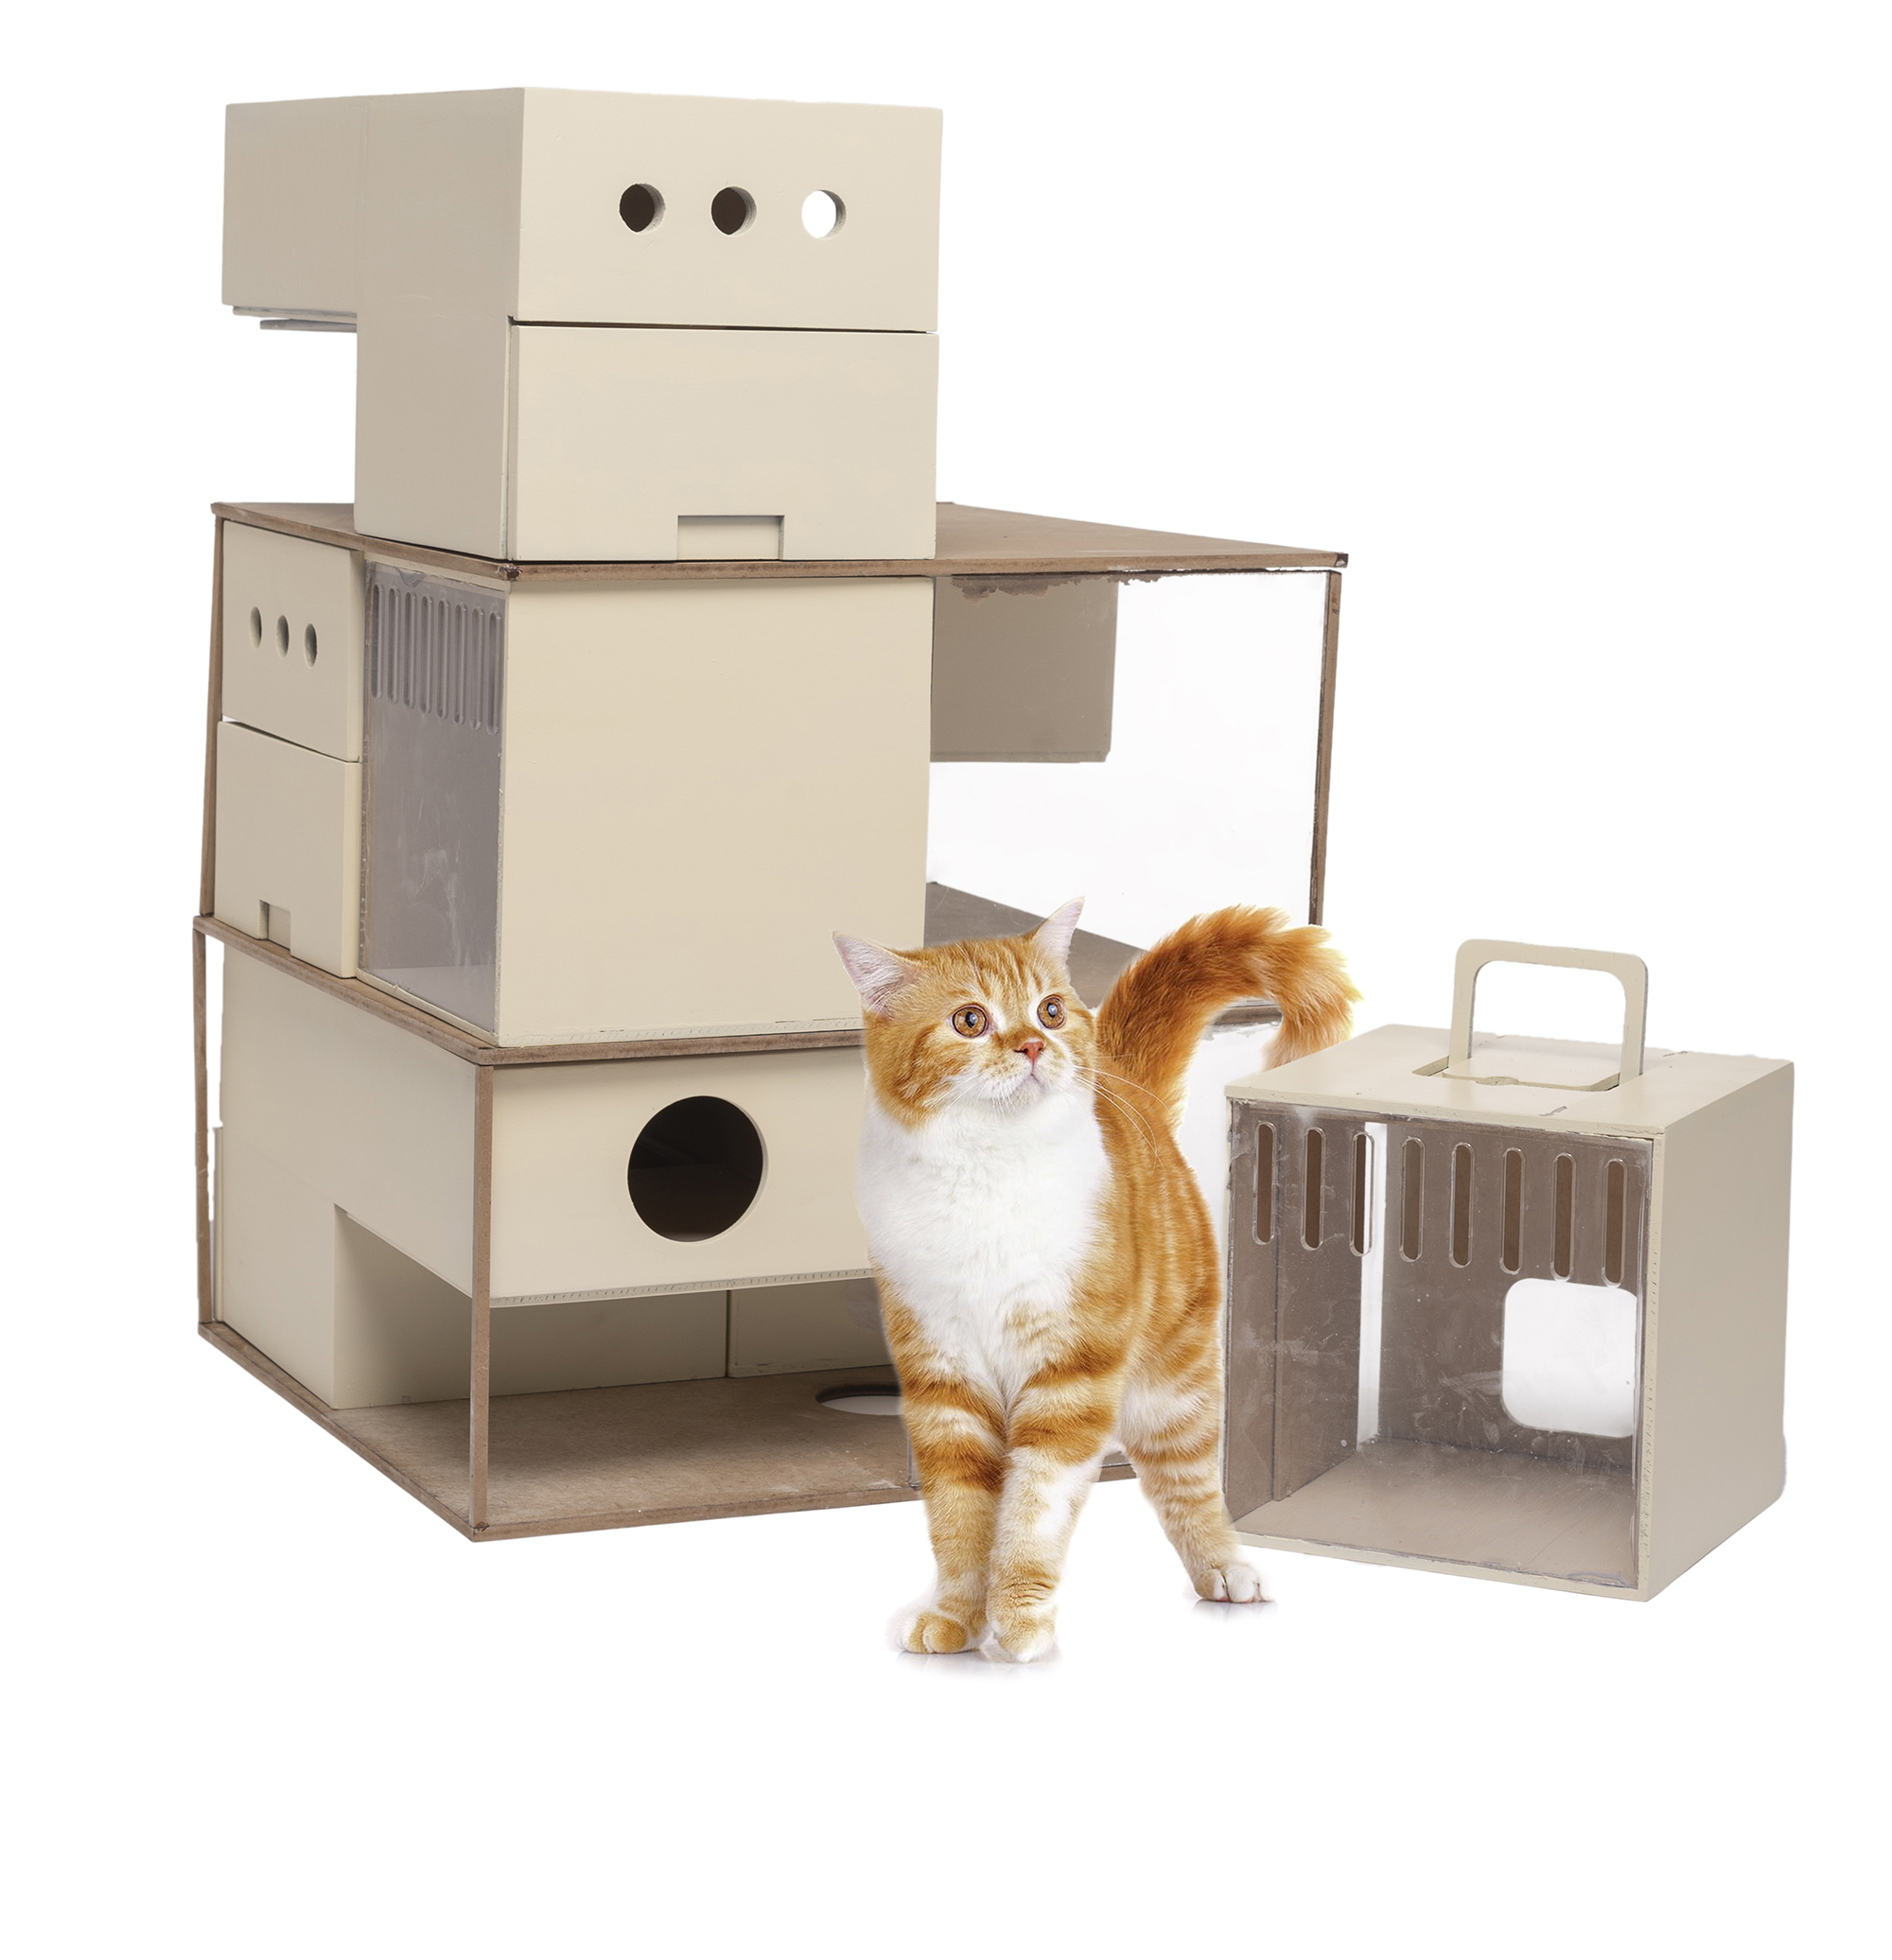 A cat stands next to an intricate litter box setup.